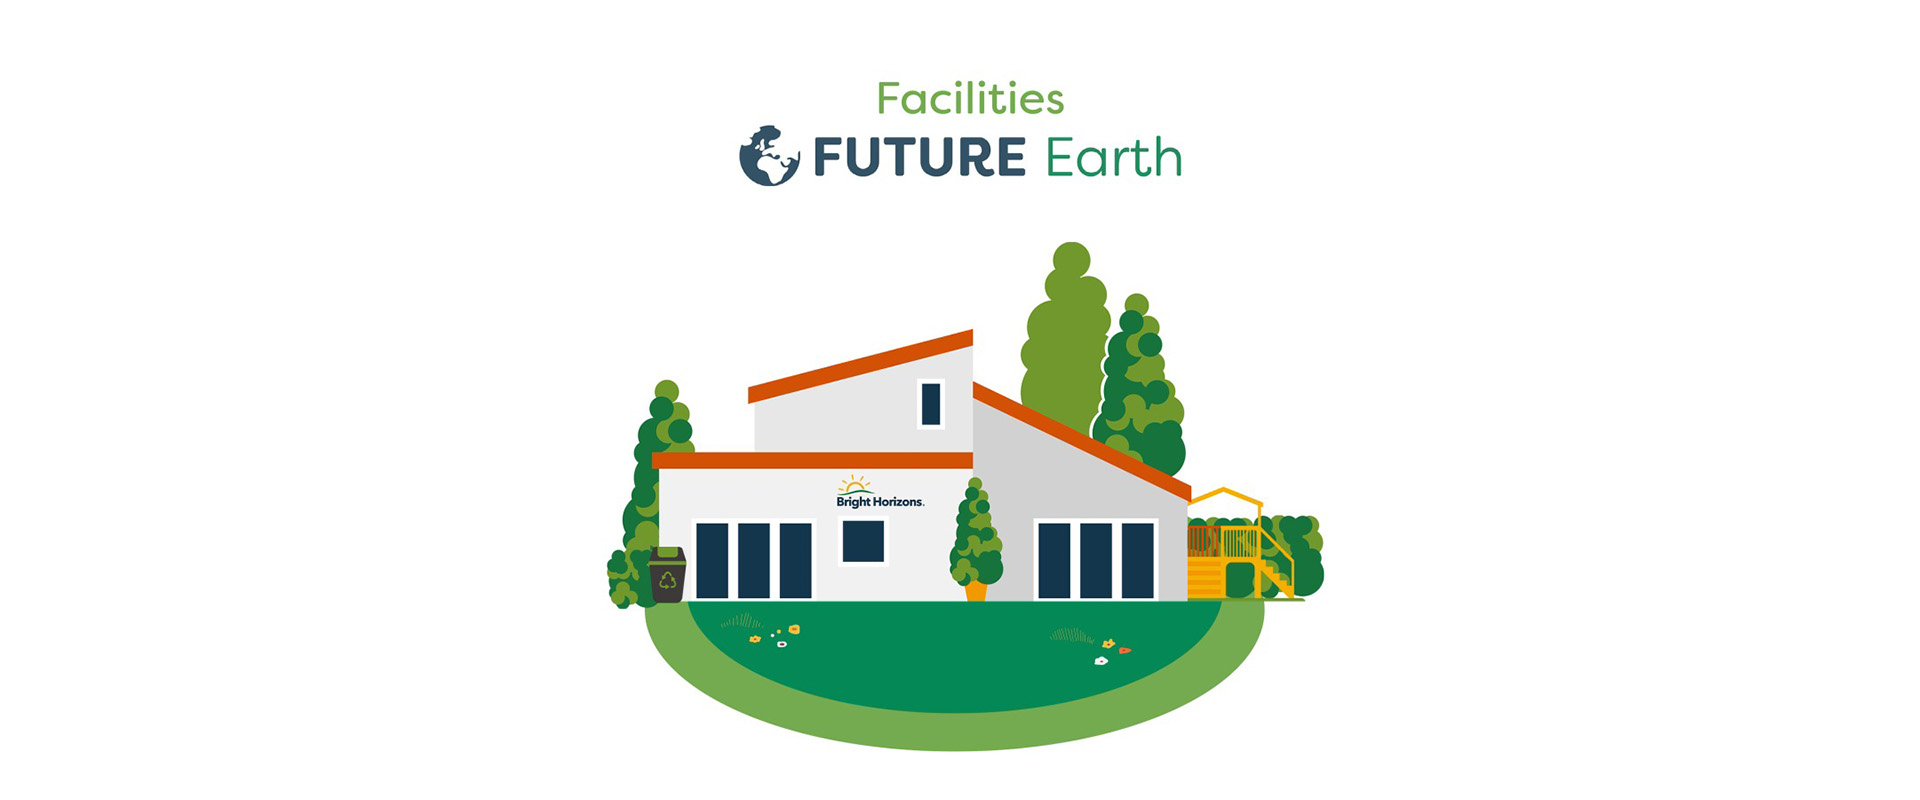 Future Earth - Facilities